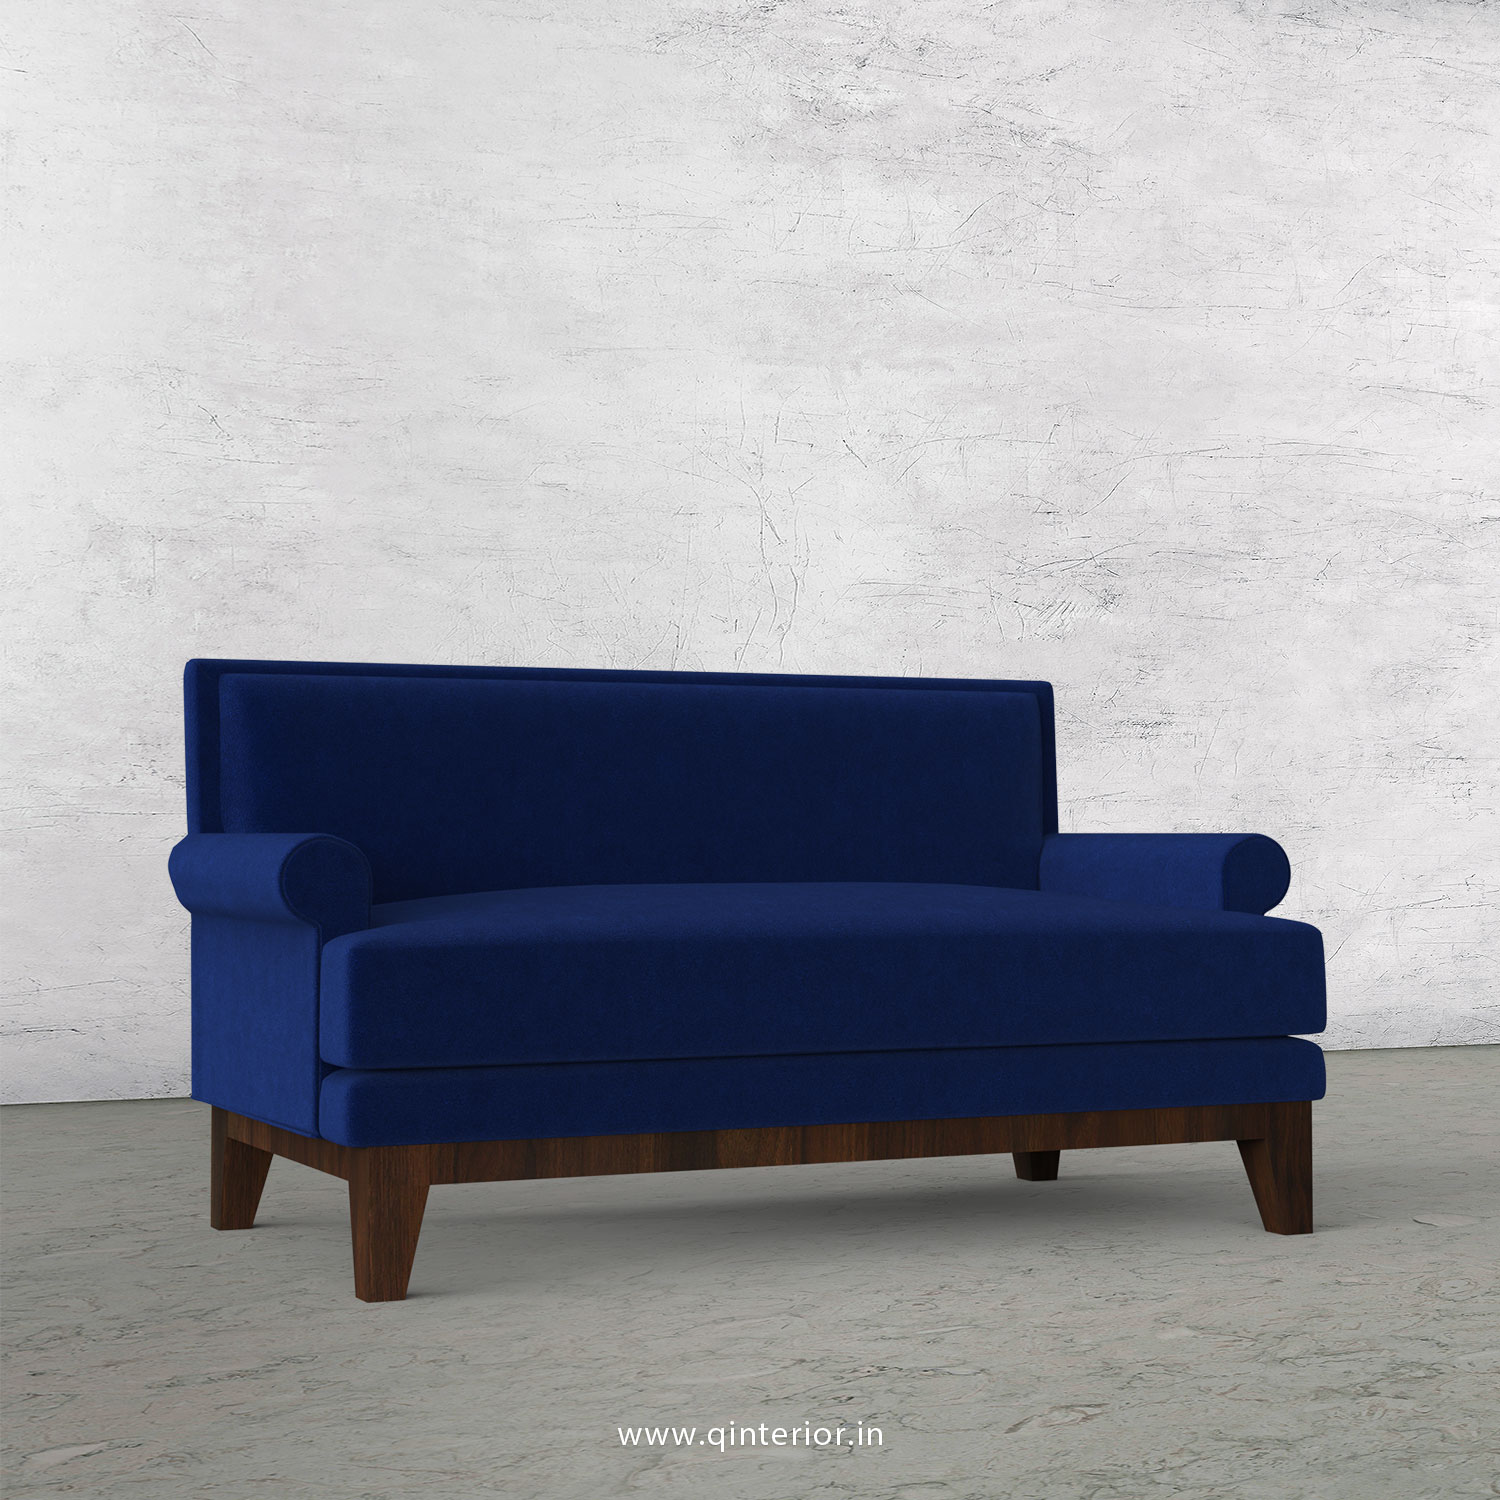 Aviana 2 Seater Sofa in Velvet Fabric - SFA001 VL05